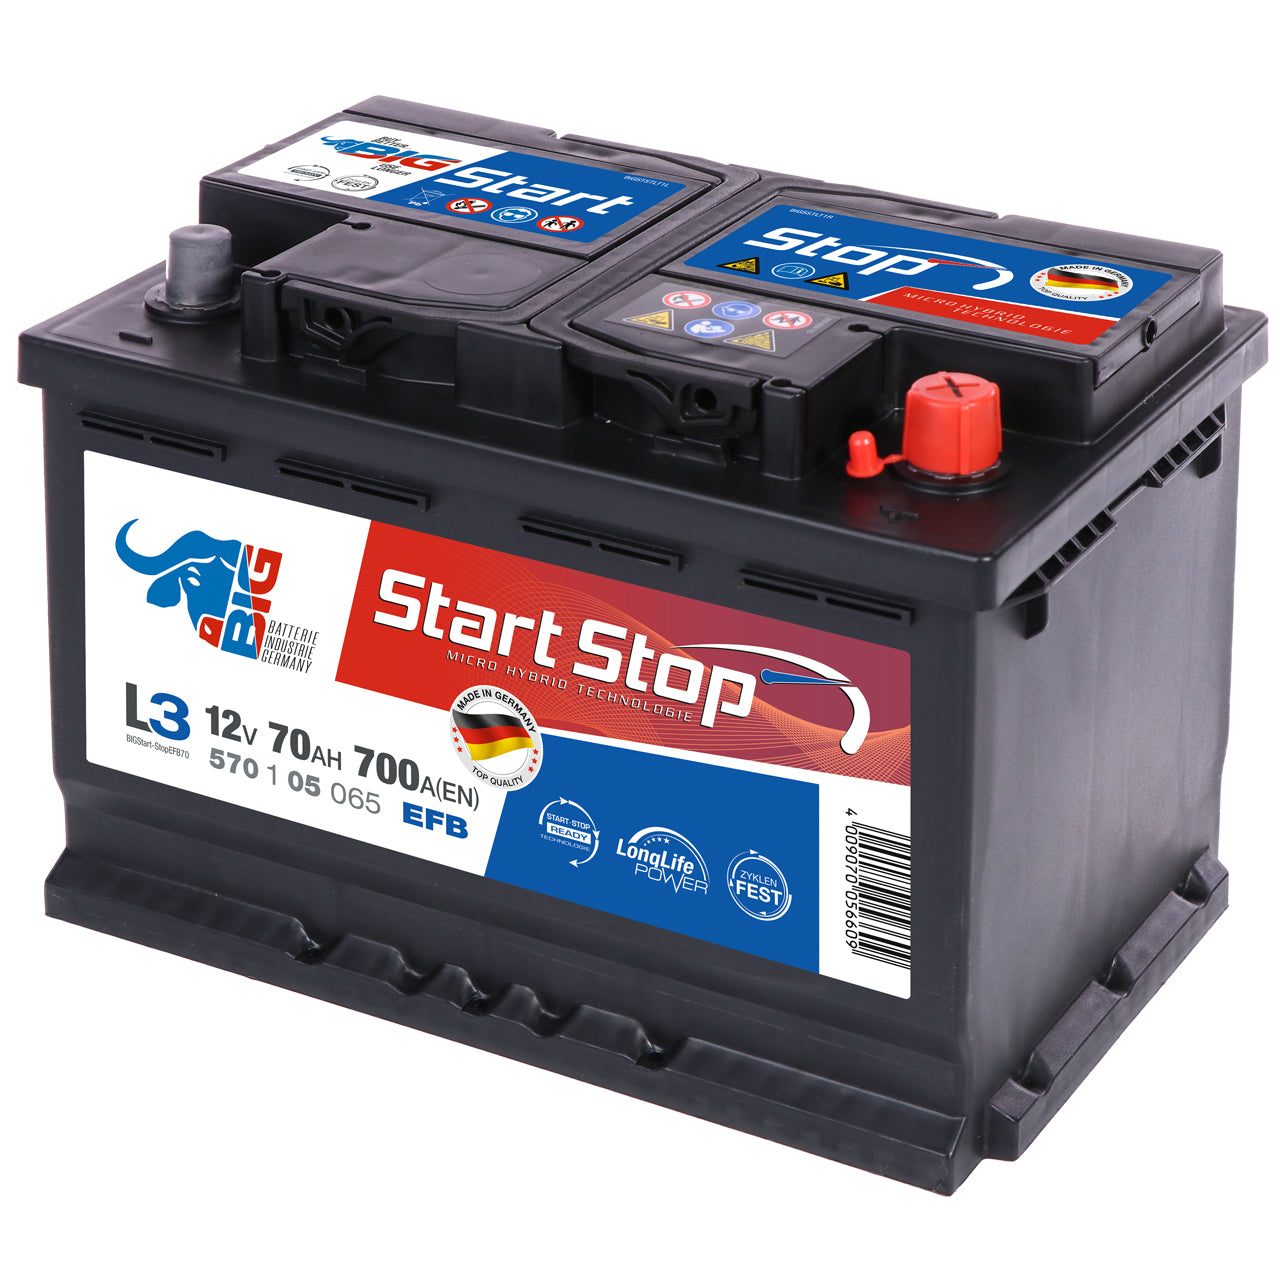 BB1270 bidirektionales Batterie zu Batterie Ladegerät 12V / 70 A only  529,95 €